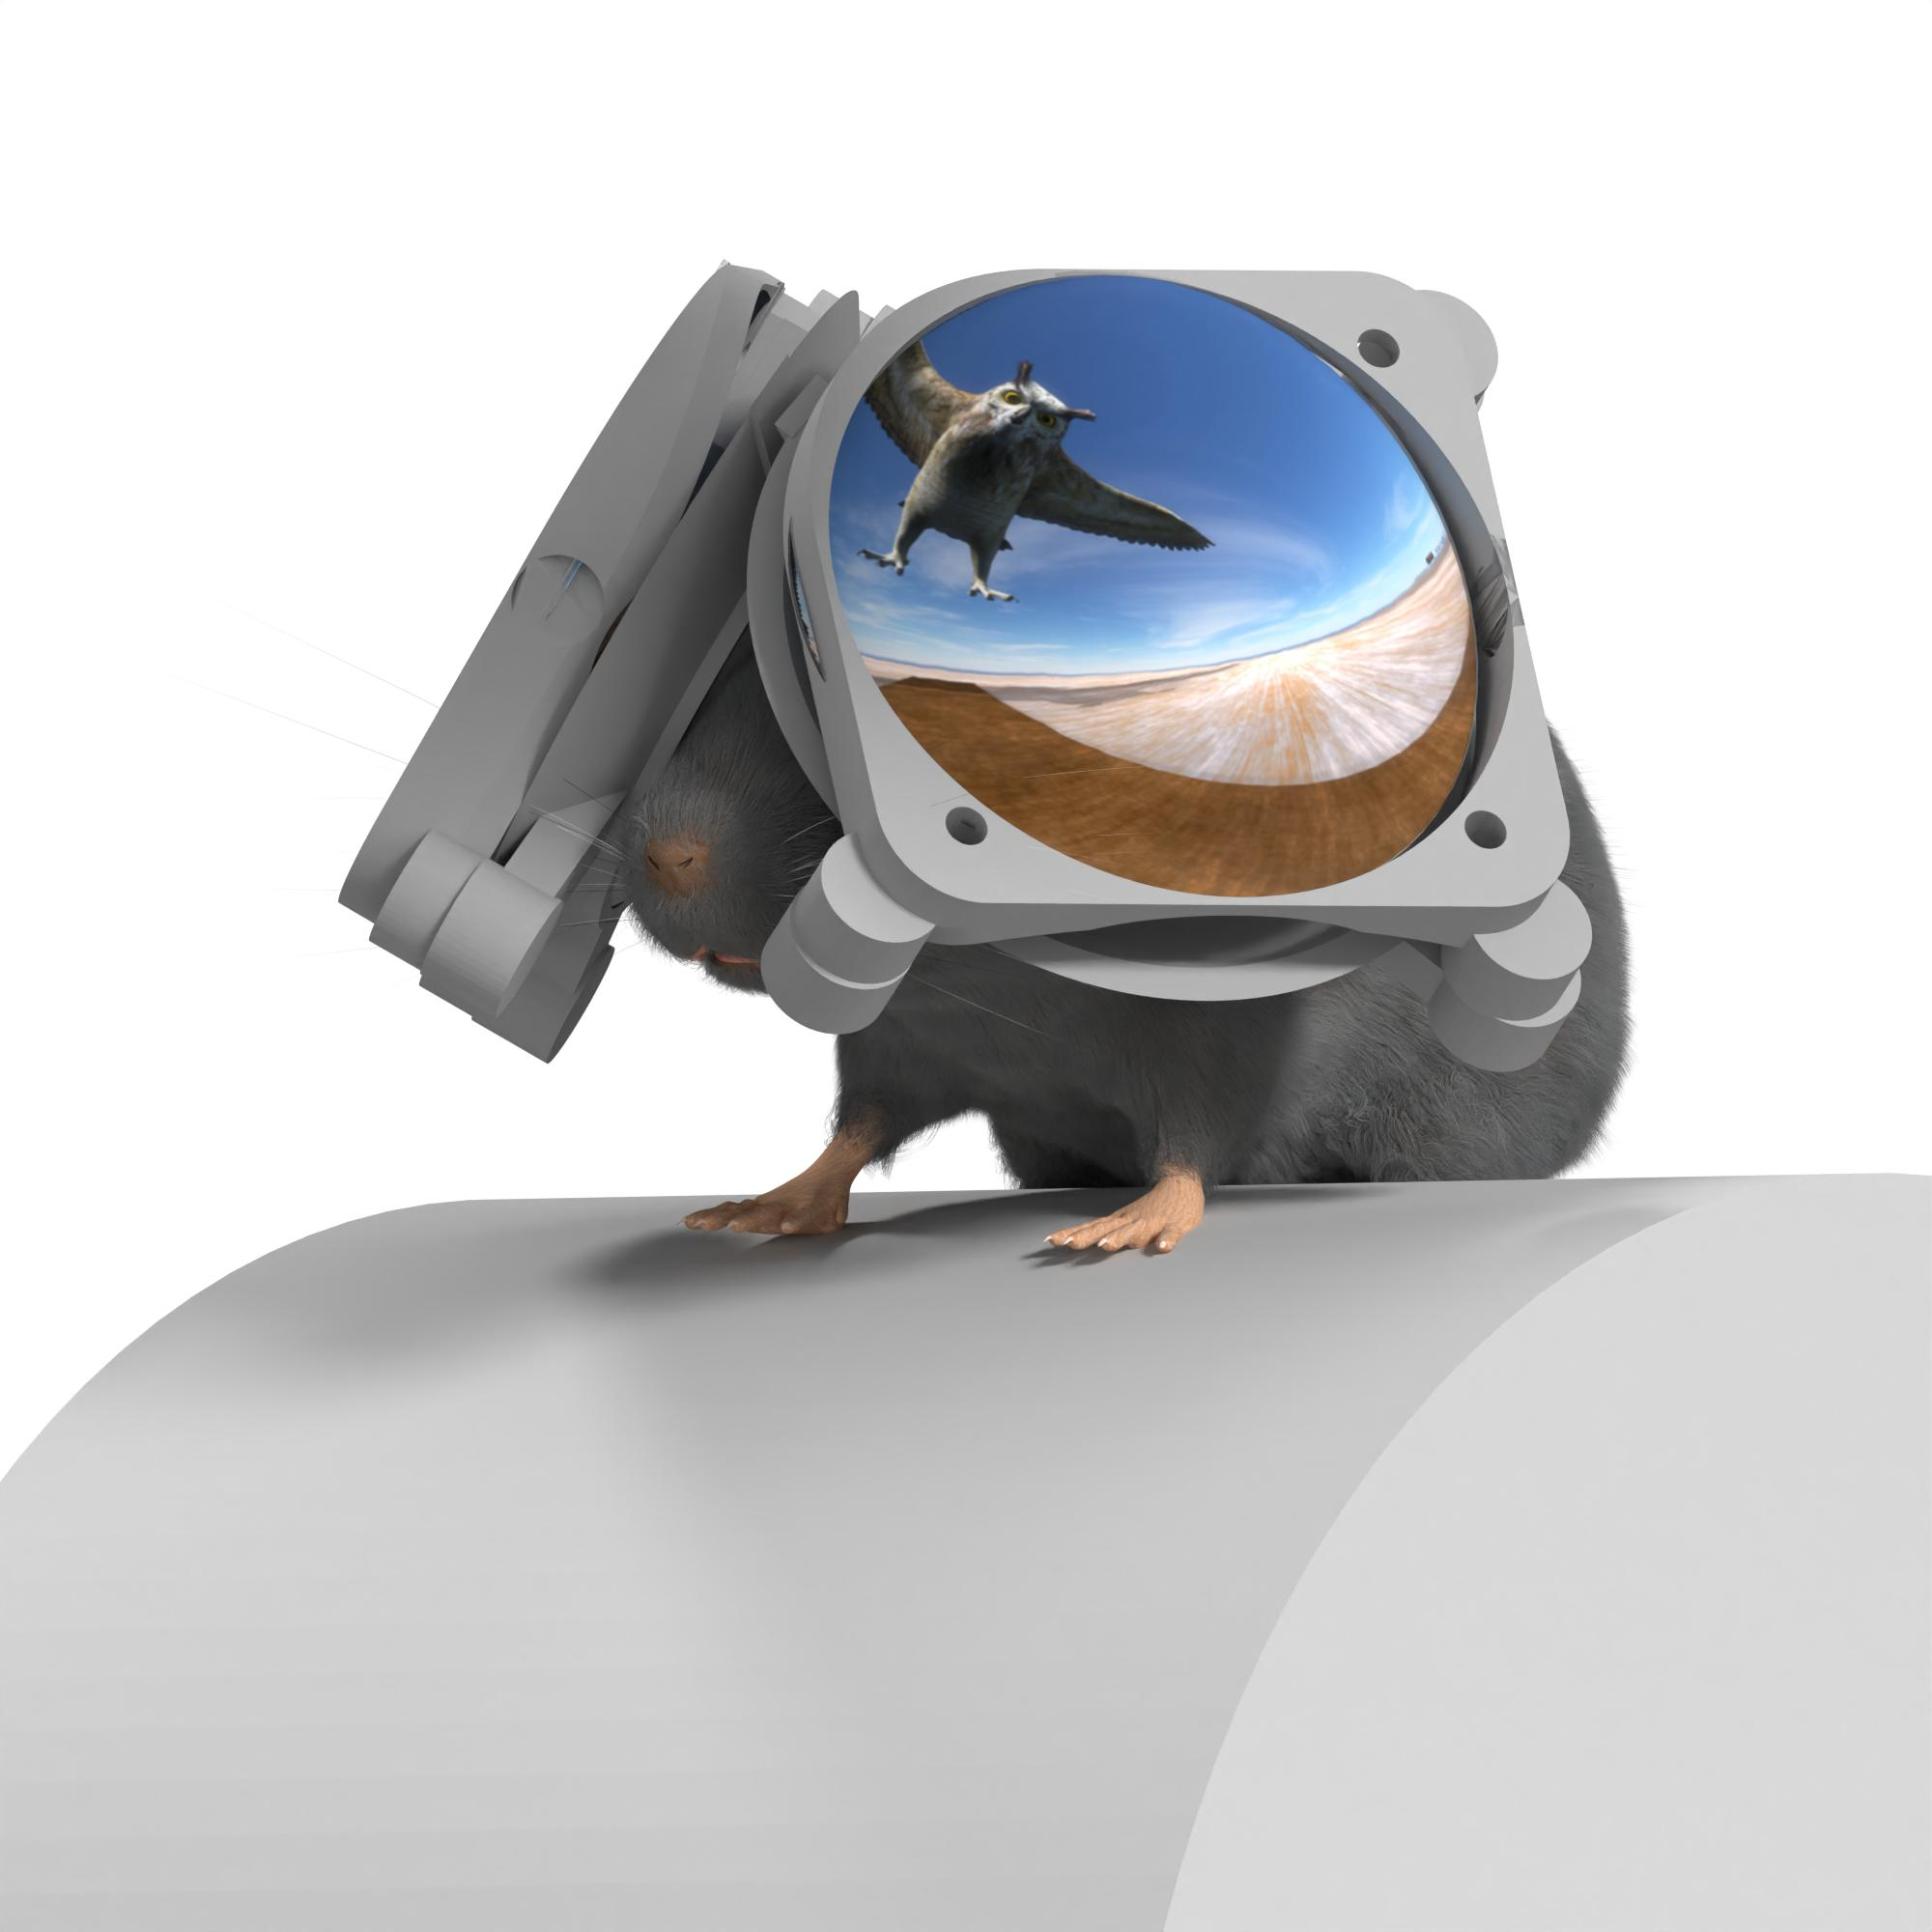 Immagine renderizzata in 3D di un topo che indossa occhiali VR mostrando un gufo per rappresentare un predatore